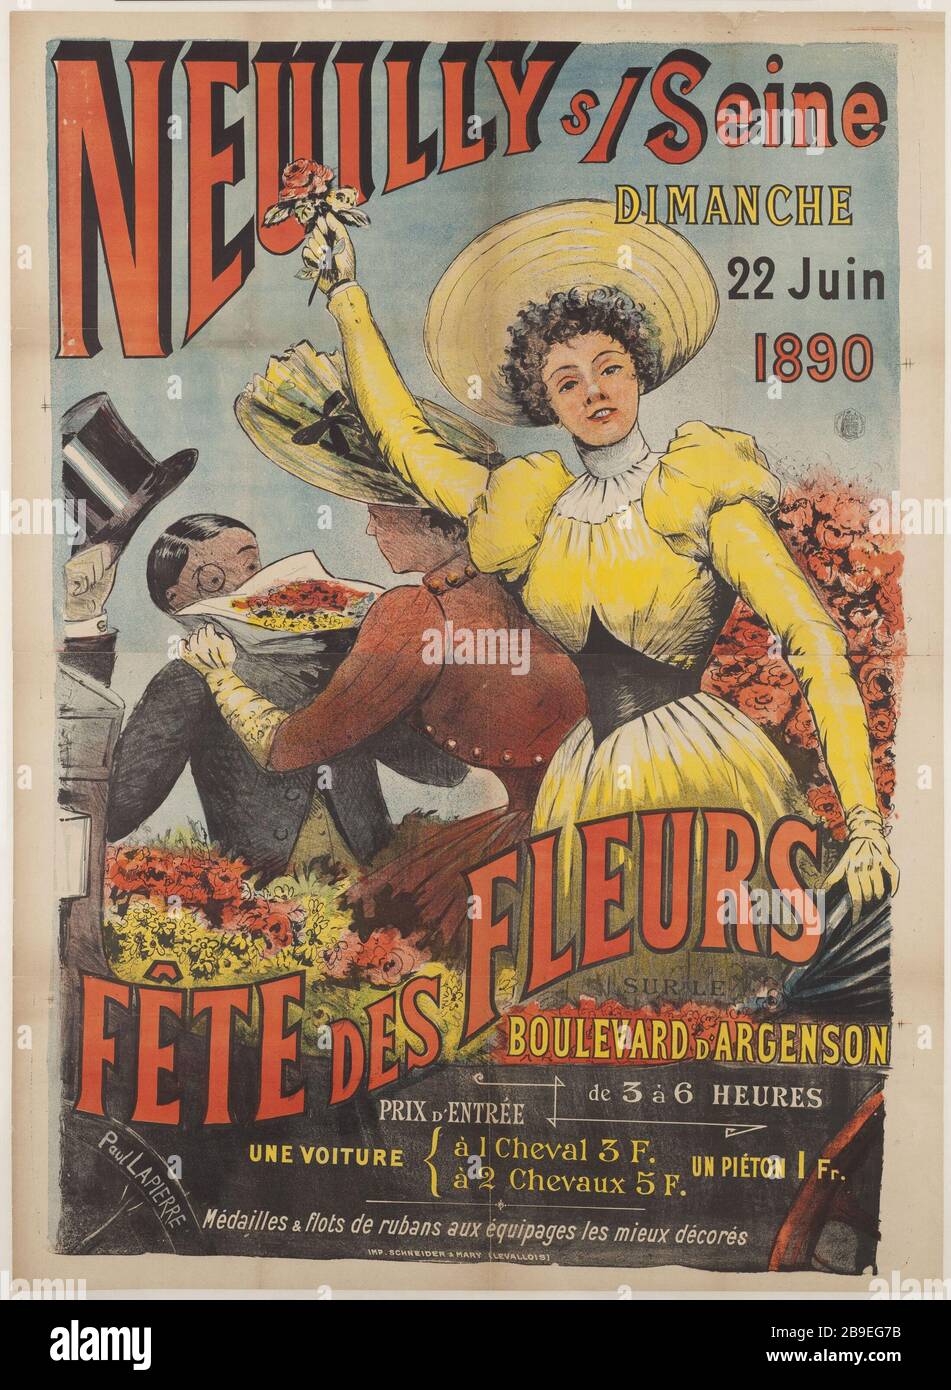 NEUILLY-SUR-SEINE FESTIVAL OF FLOWERS Paul Lapierre. 'Neuilly, Fête des fleurs'. Lithographie. 1890. Paris, musée Carnavalet. Stock Photo